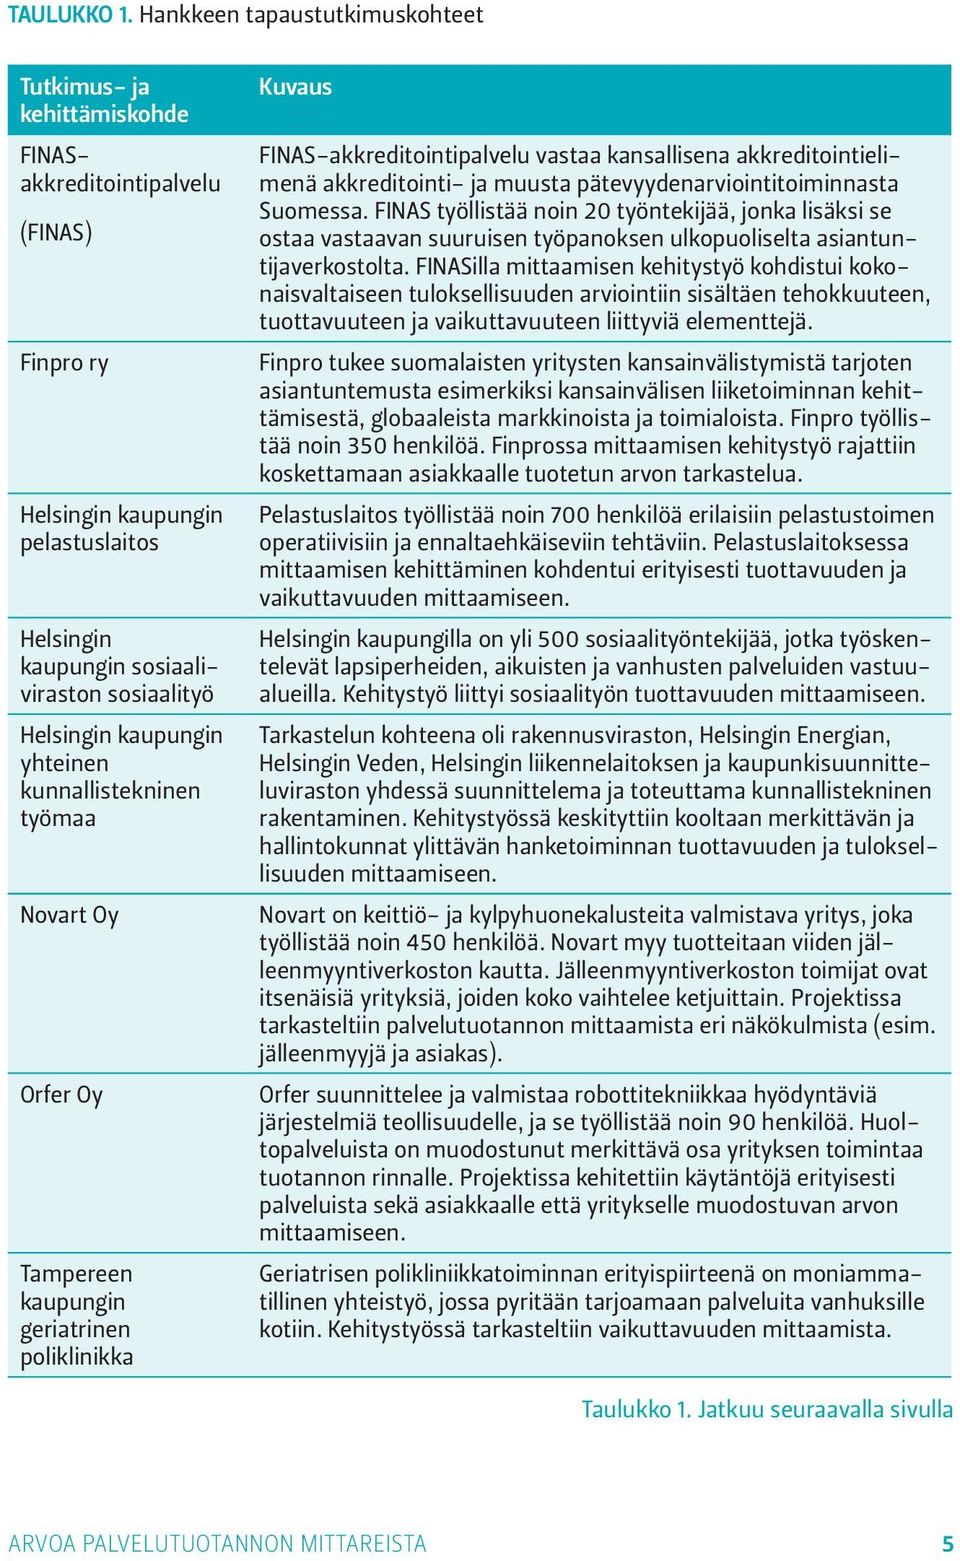 kaupungin yhteinen kunnallistekninen työmaa Novart Oy Orfer Oy Tampereen kaupungin geriatrinen poliklinikka Kuvaus FINAS-akkreditointipalvelu vastaa kansallisena akkreditointielimenä akkreditointi-